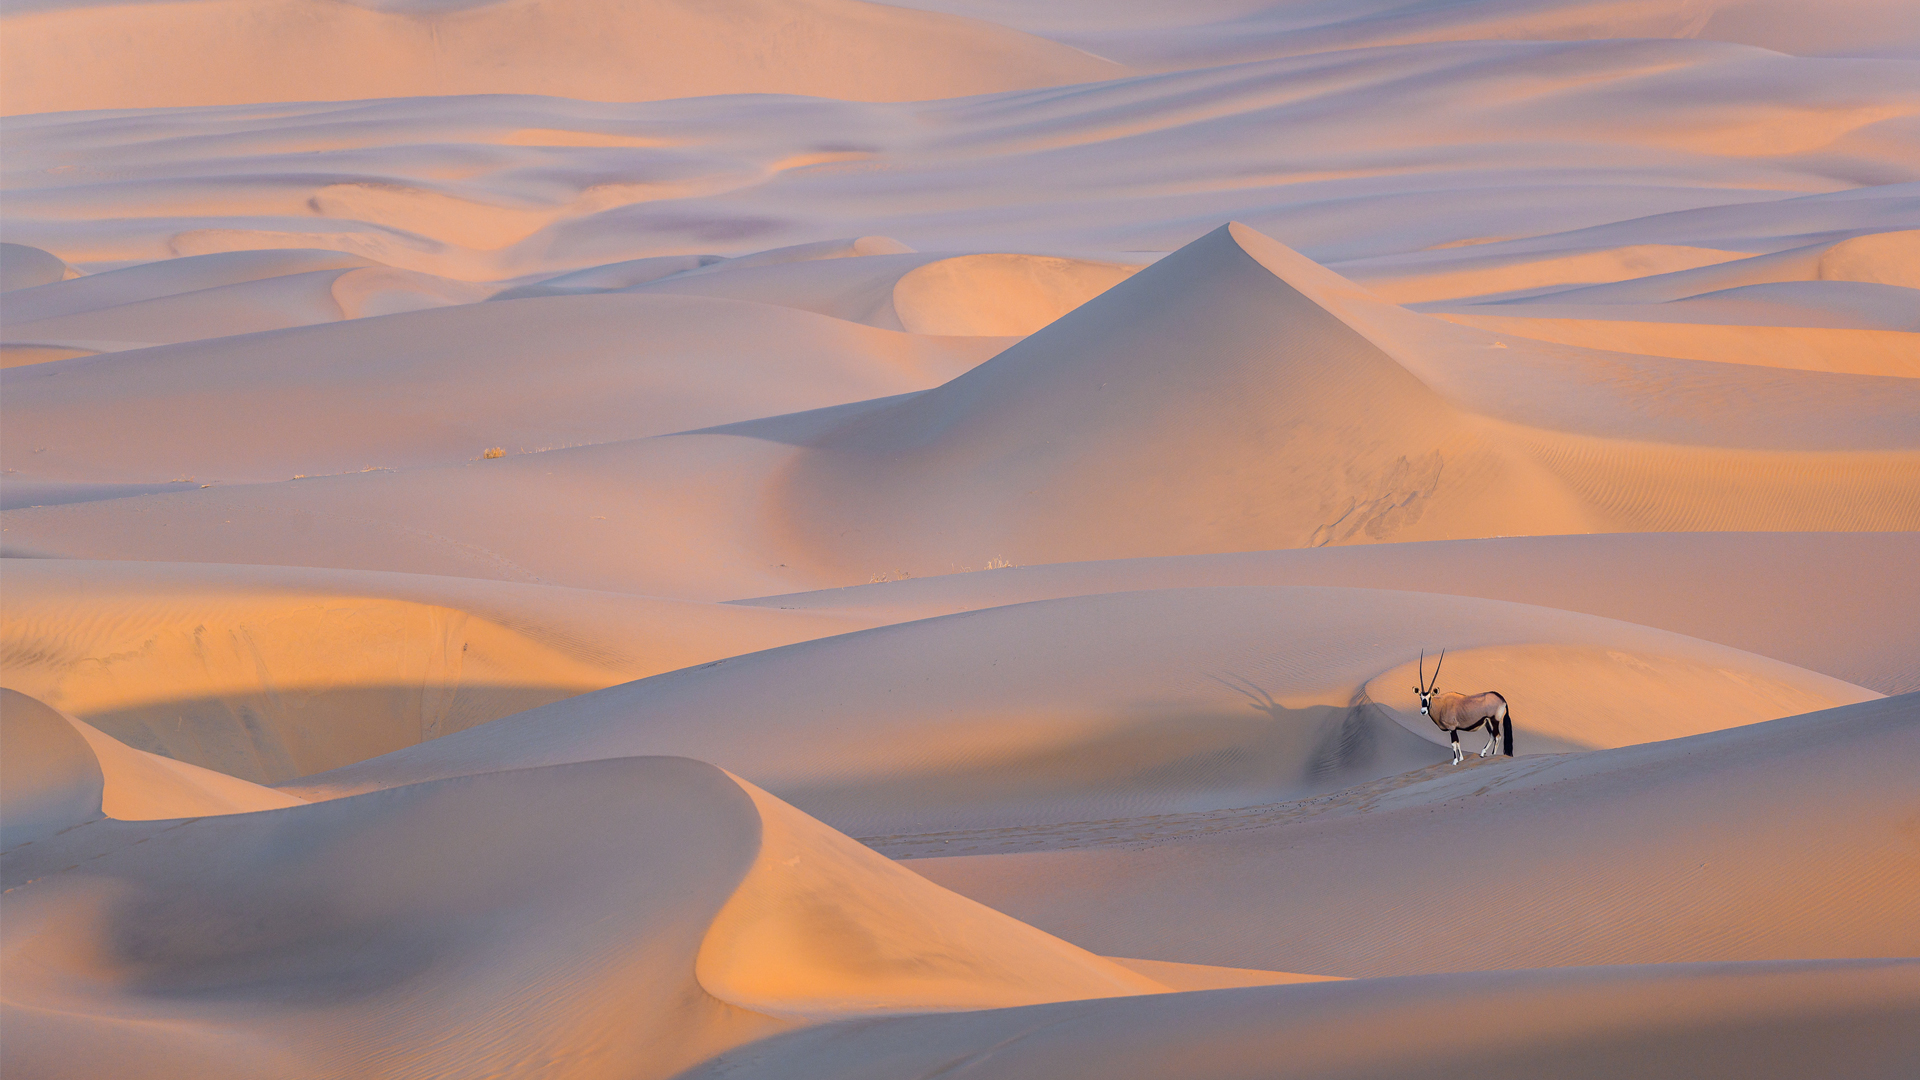 namibia regions the namib desert including sossusvlei oryx in desert dunes